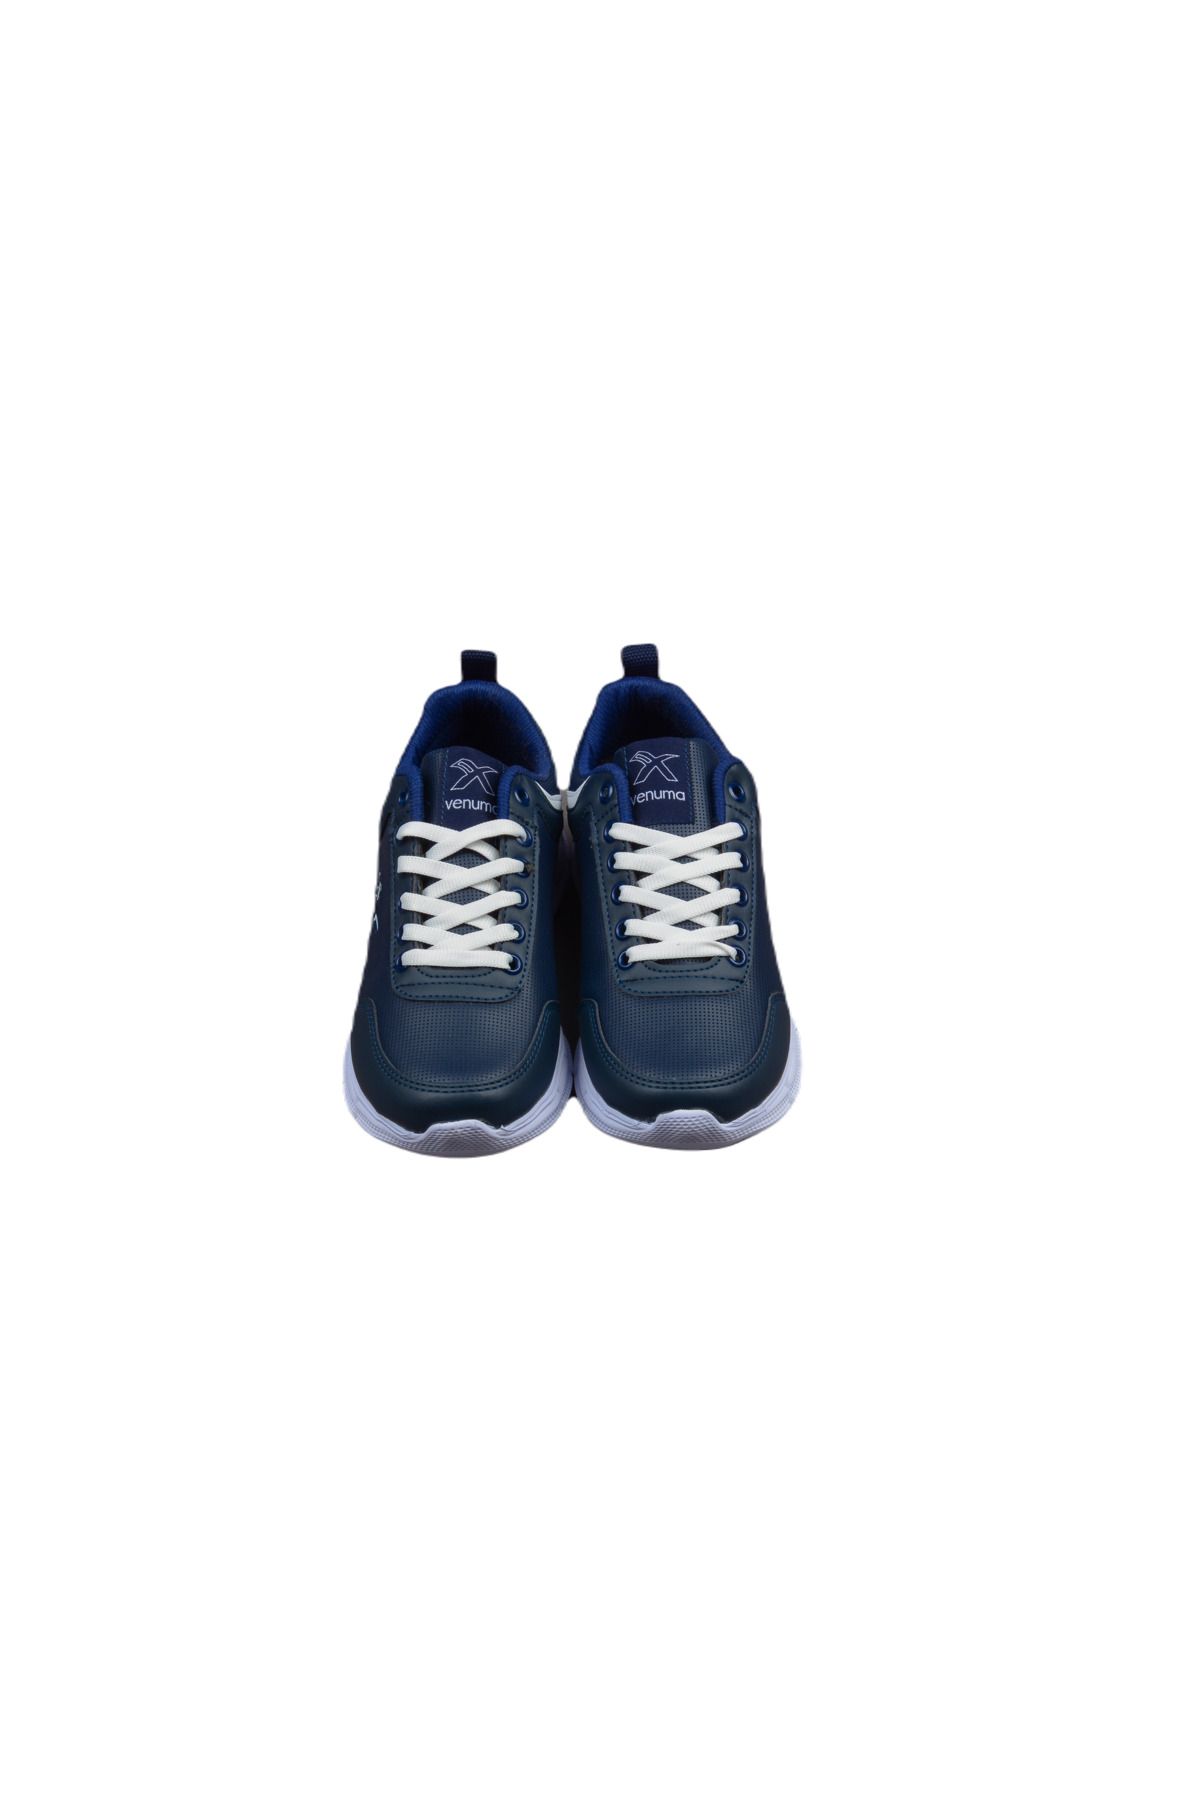 Venuma Spor Unisex Sneaker Ayakkabı